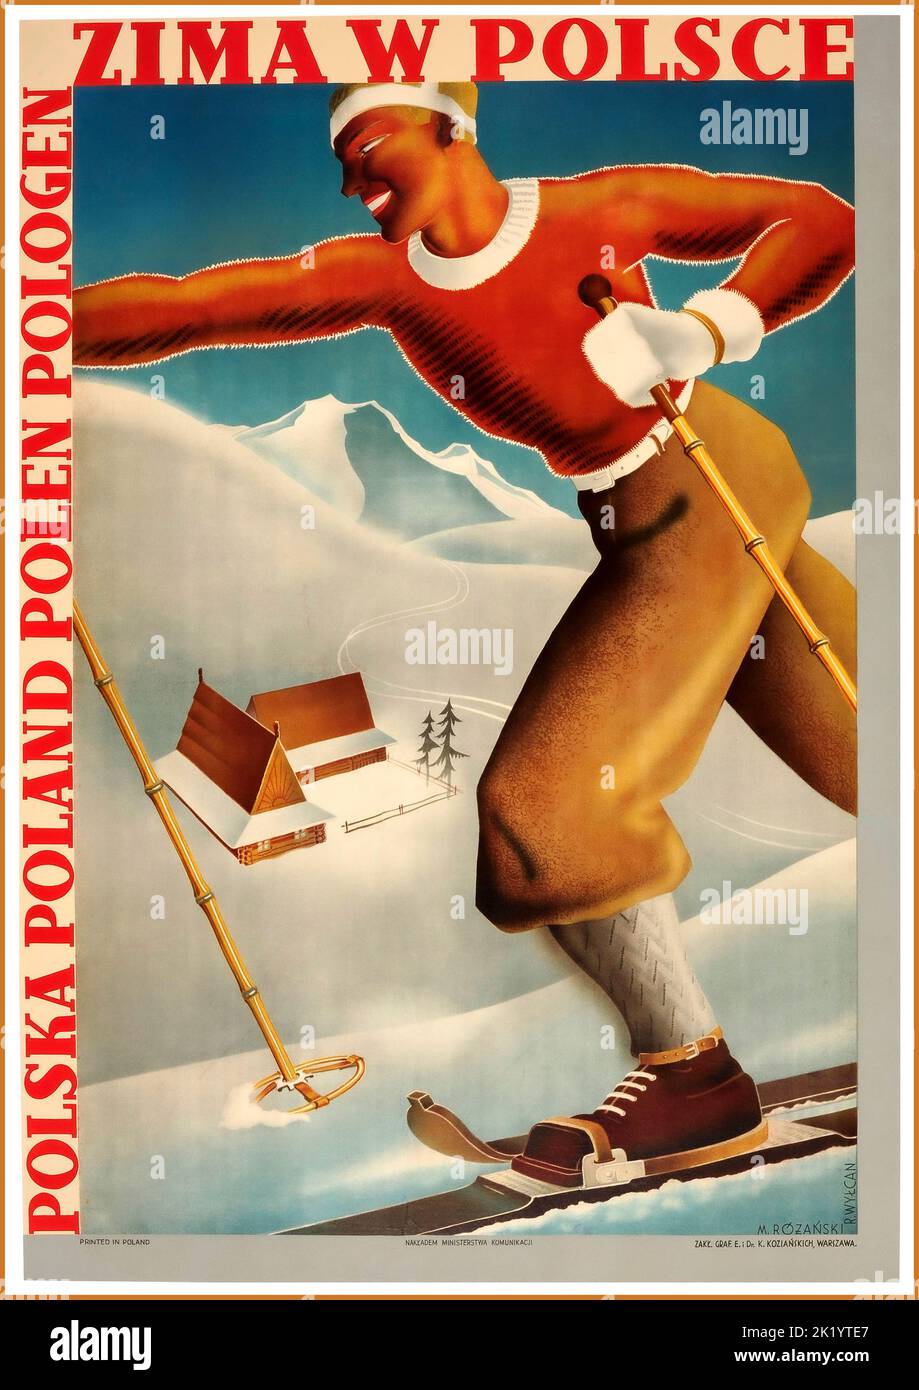 Vintage Pologne ski polonais ski 1920s Poster Sports d'hiver montagnes de neige Polonais Graphisme Europe de l'est Pologne Zima ski Vintage Travel Poster Vintage Retro hiver en Pologne ski polonais Banque D'Images